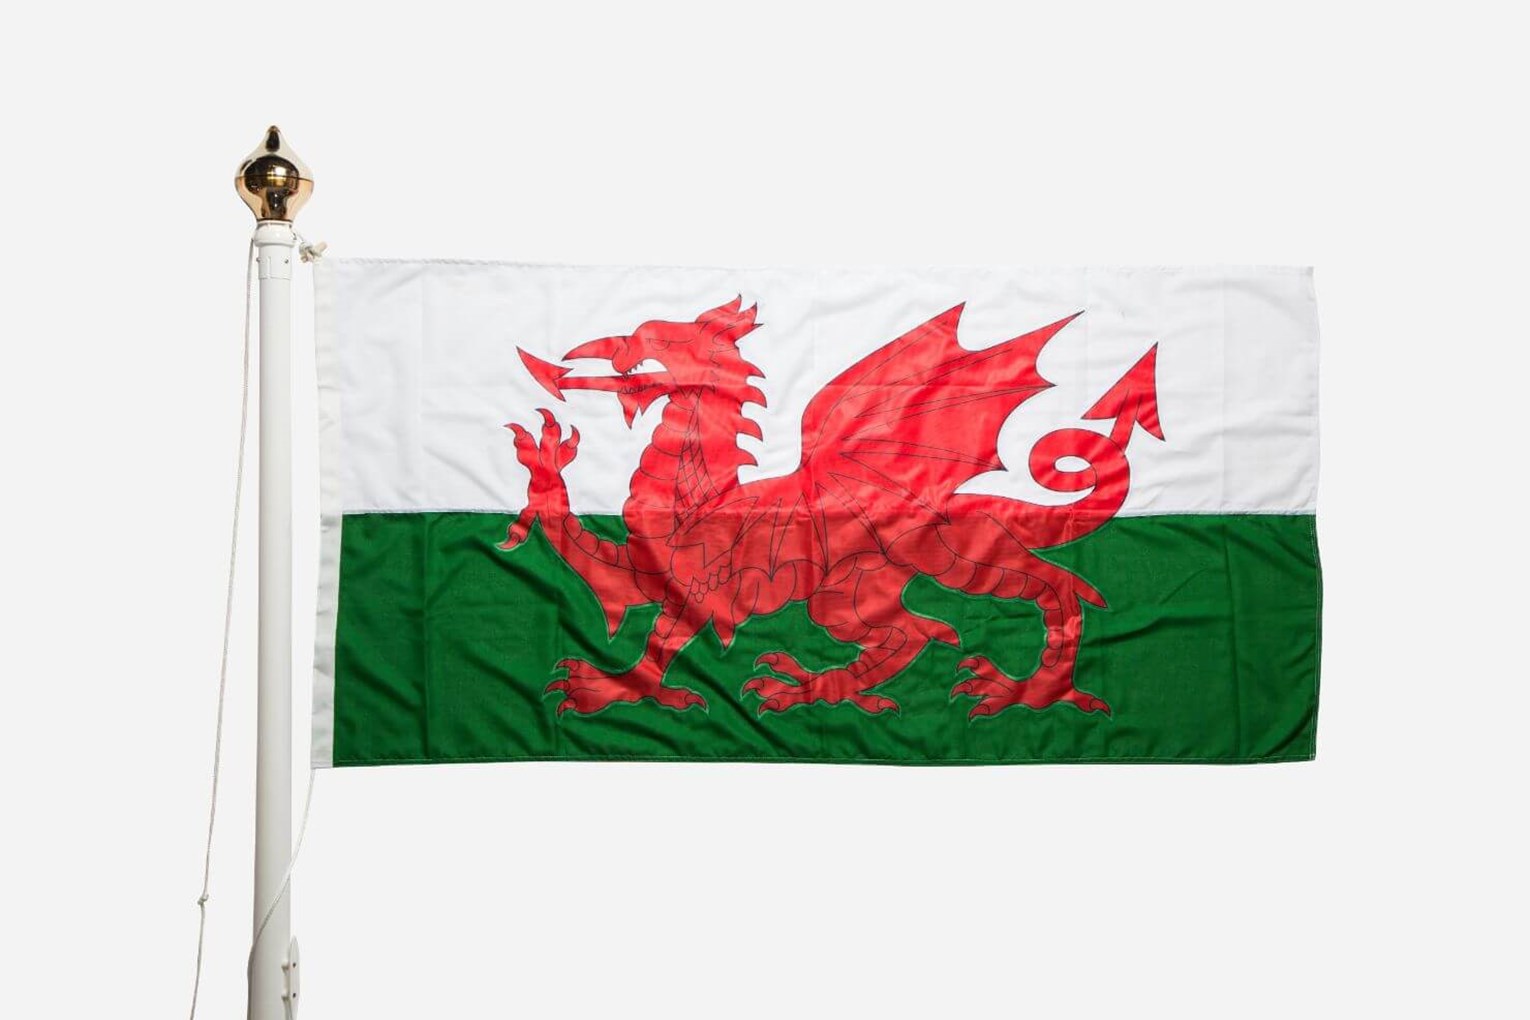 Lá cờ Wales, với những hình ảnh thú vị như rồng đỏ, là một biểu tượng quan trọng của xứ sở này. Lá cờ này tượng trưng cho lòng yêu nước và chính nghĩa cũng như sự độc lập của Wales. Hãy khám phá qua những hình ảnh liên quan để hiểu sâu hơn về xứ Wales tuyệt đẹp.